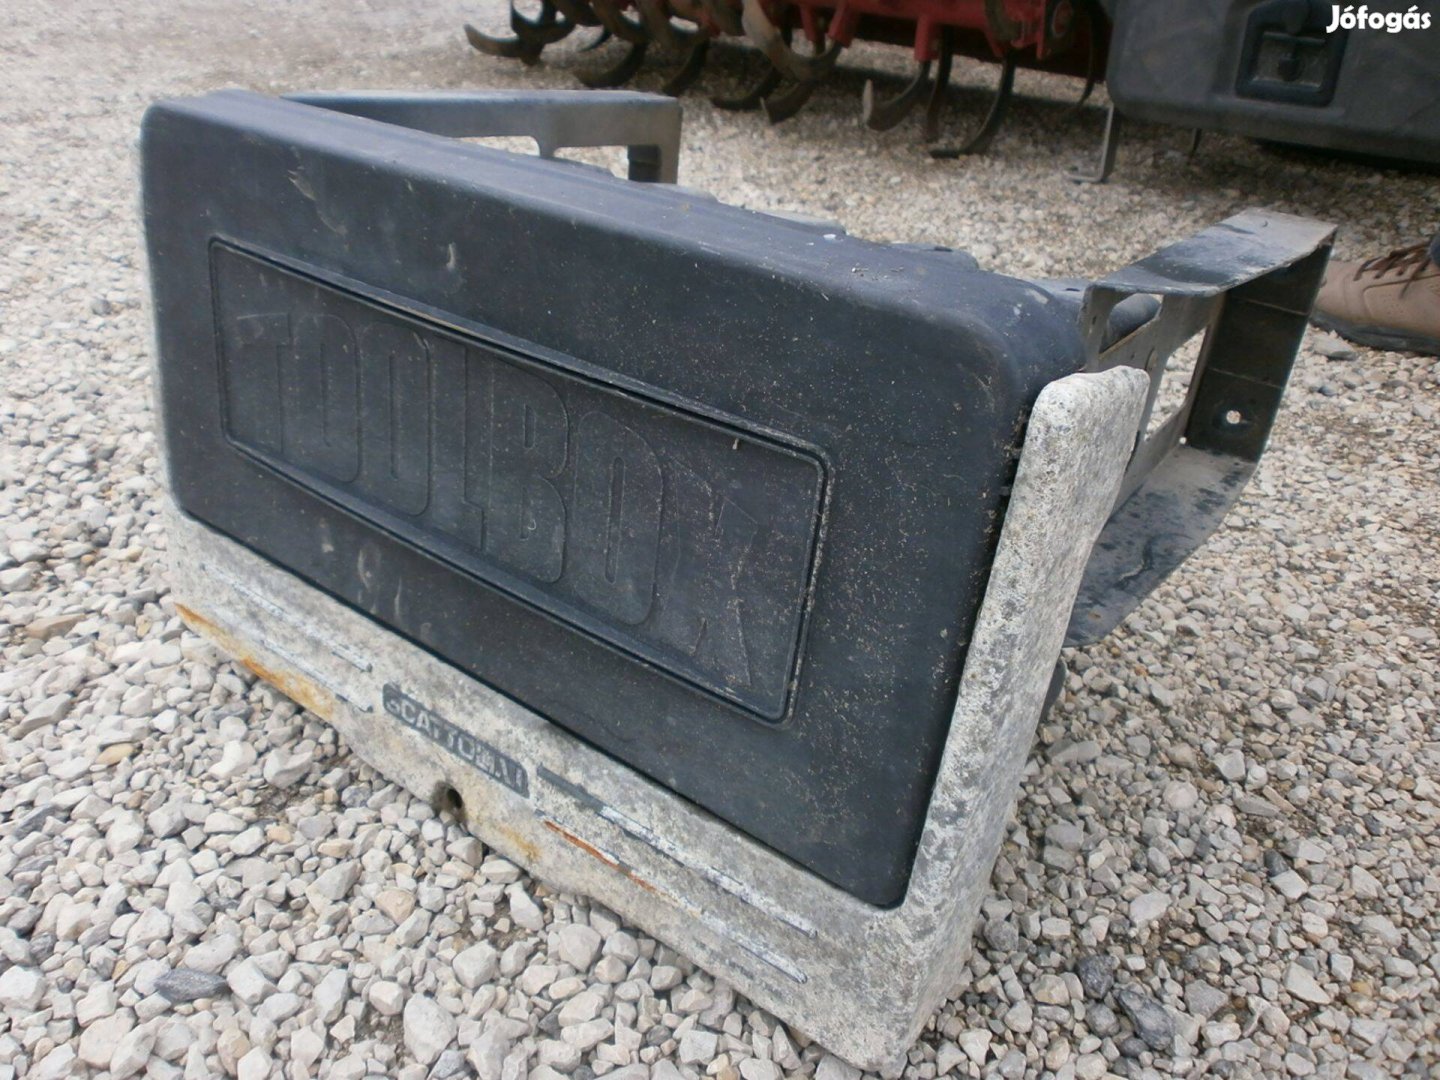 Scattolini gyári doboz szerszámos láda kisteherautóhoz